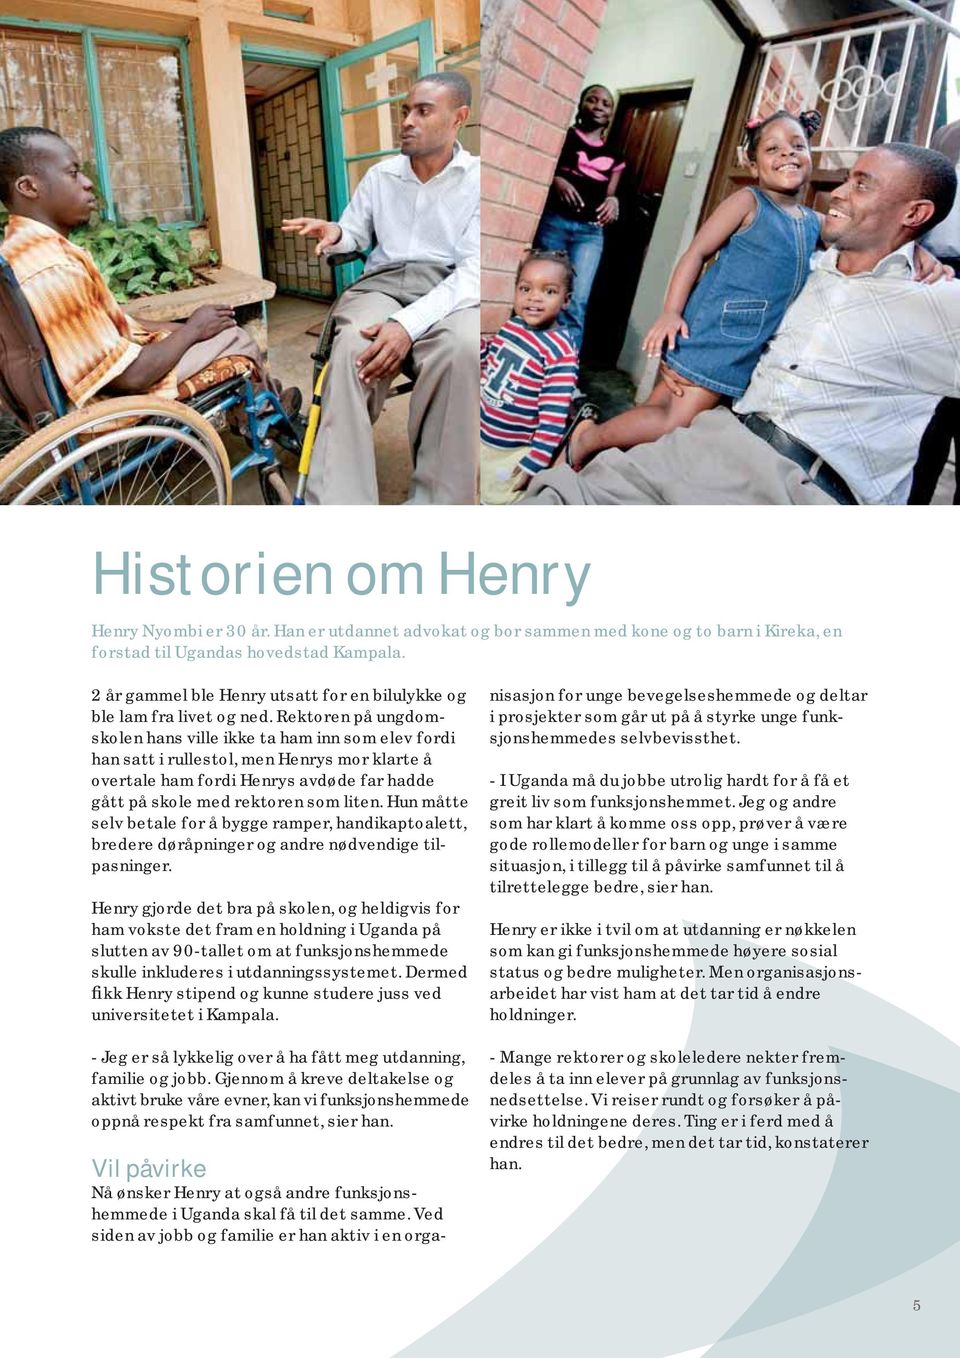 Rektoren på ungdomskolen hans ville ikke ta ham inn som elev fordi han satt i rullestol, men Henrys mor klarte å overtale ham fordi Henrys avdøde far hadde gått på skole med rektoren som liten.